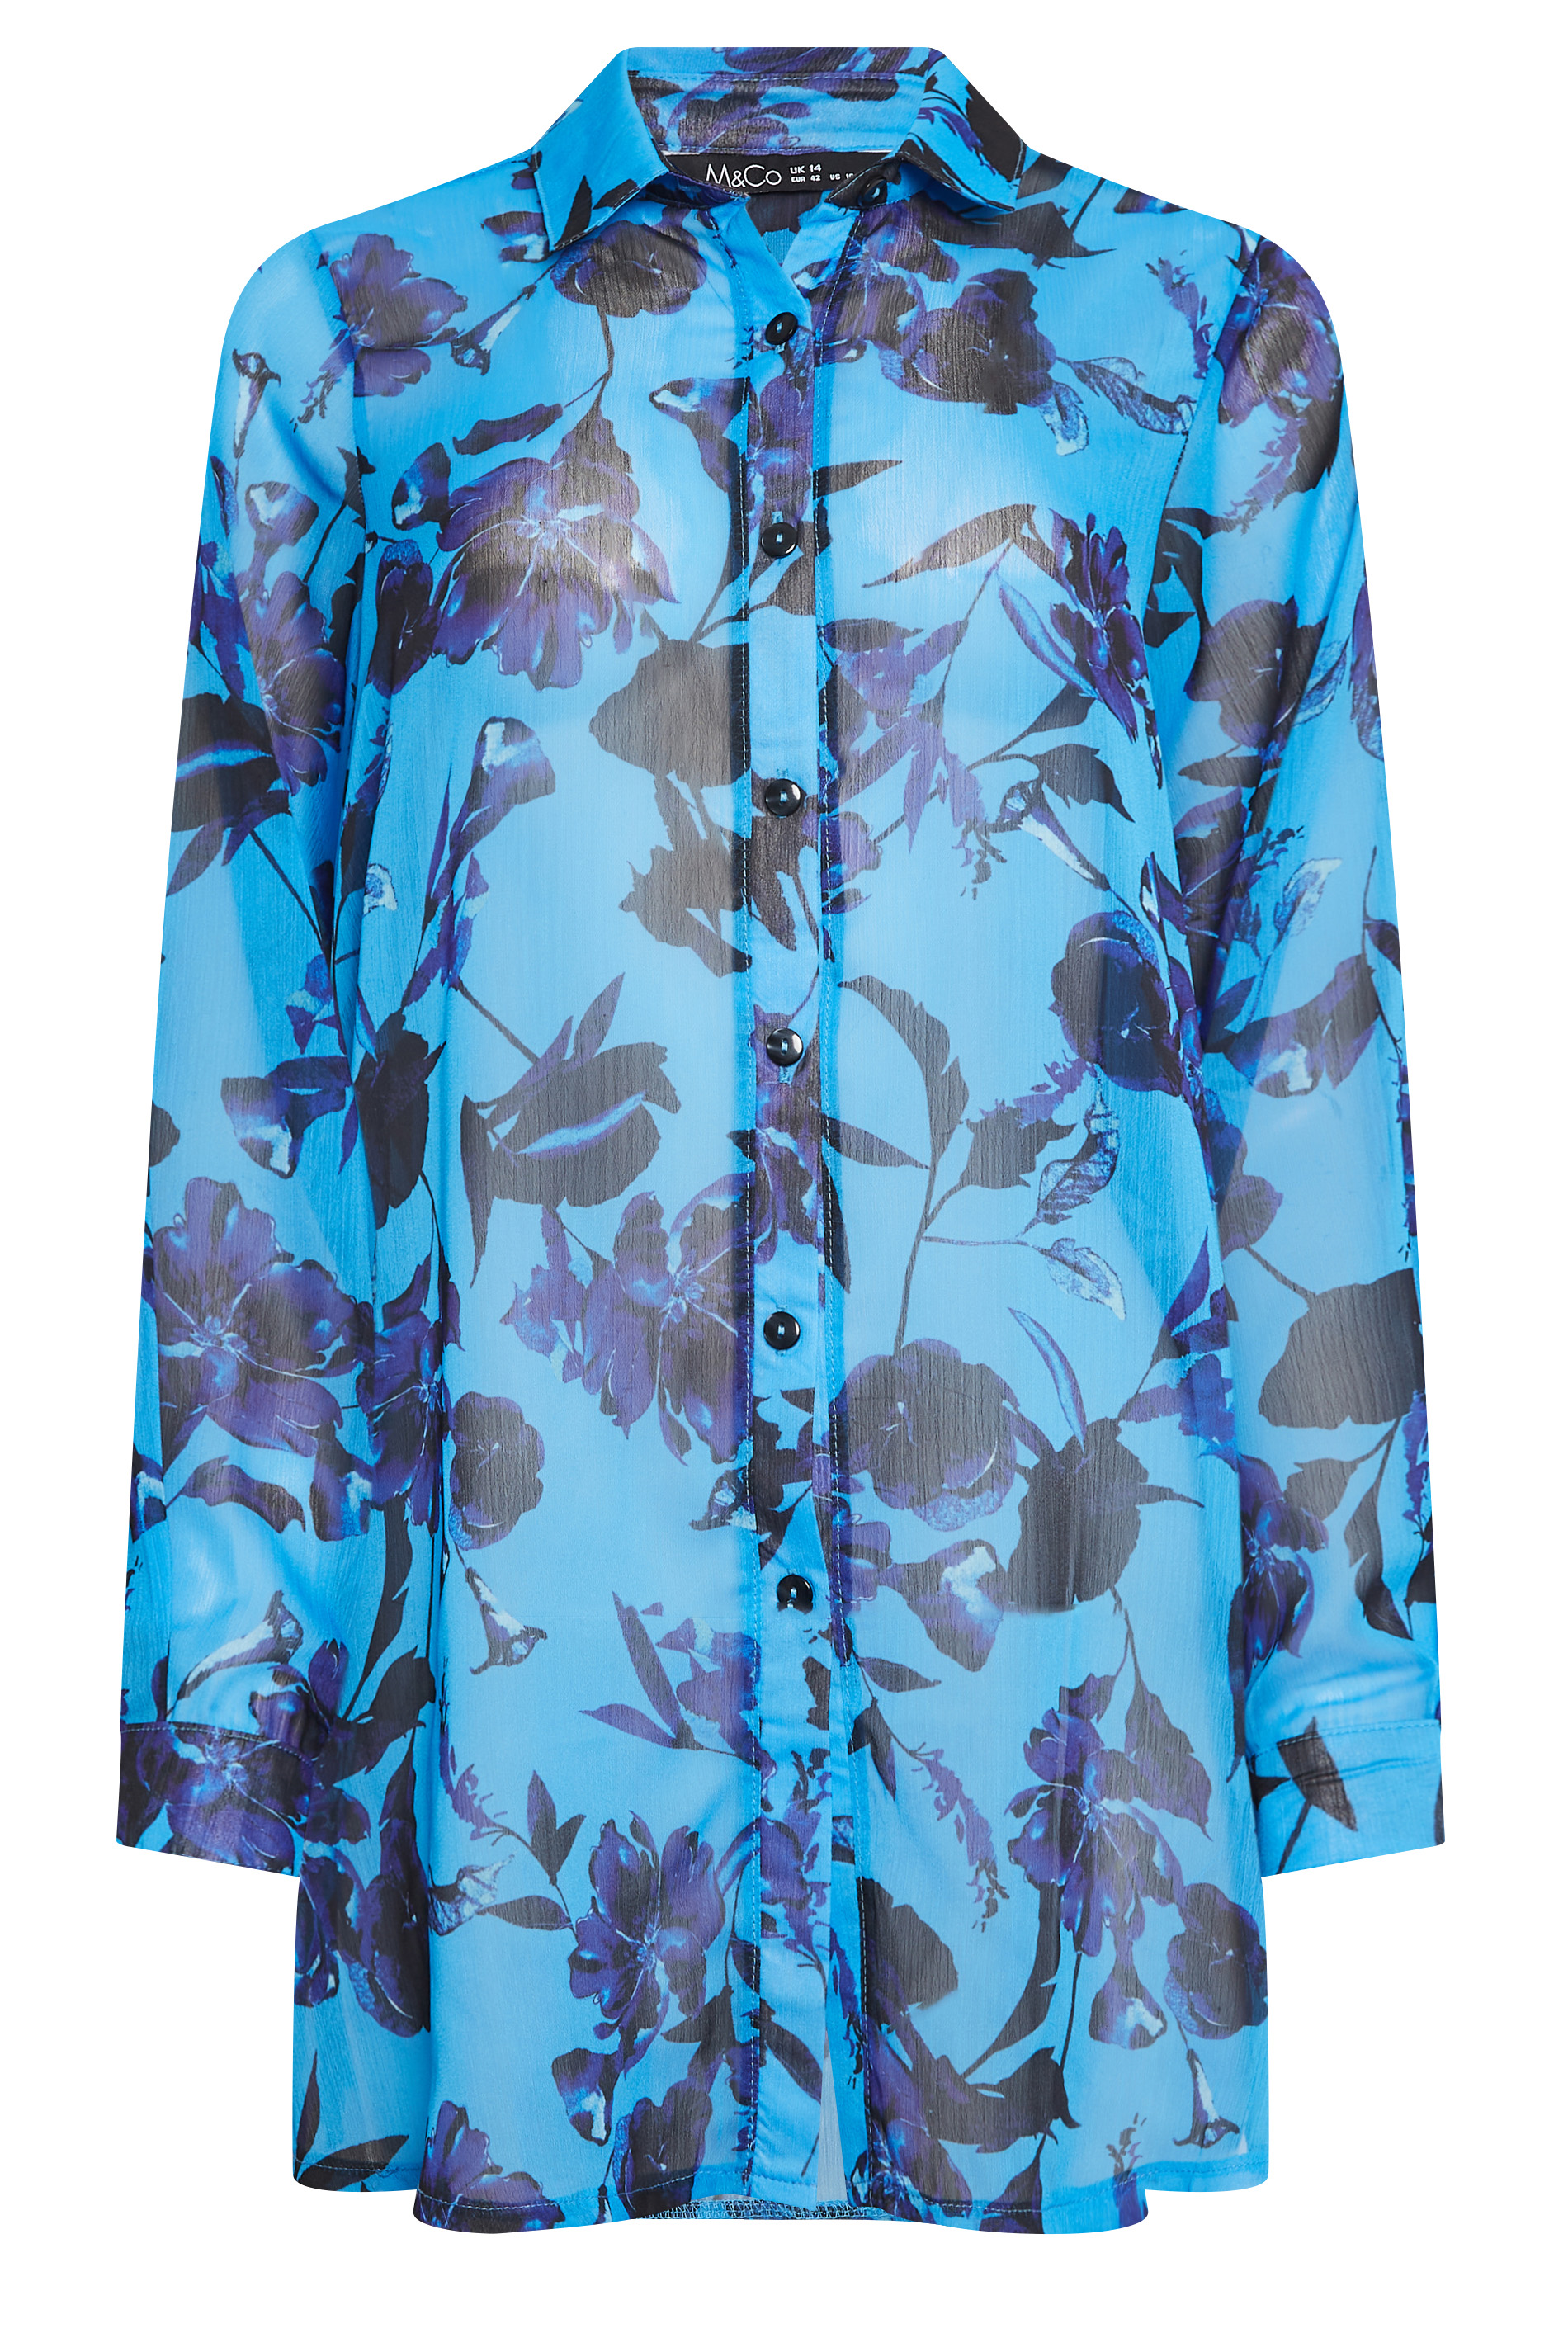 M&Co Blue Floral Print Longline Shirt | M&Co